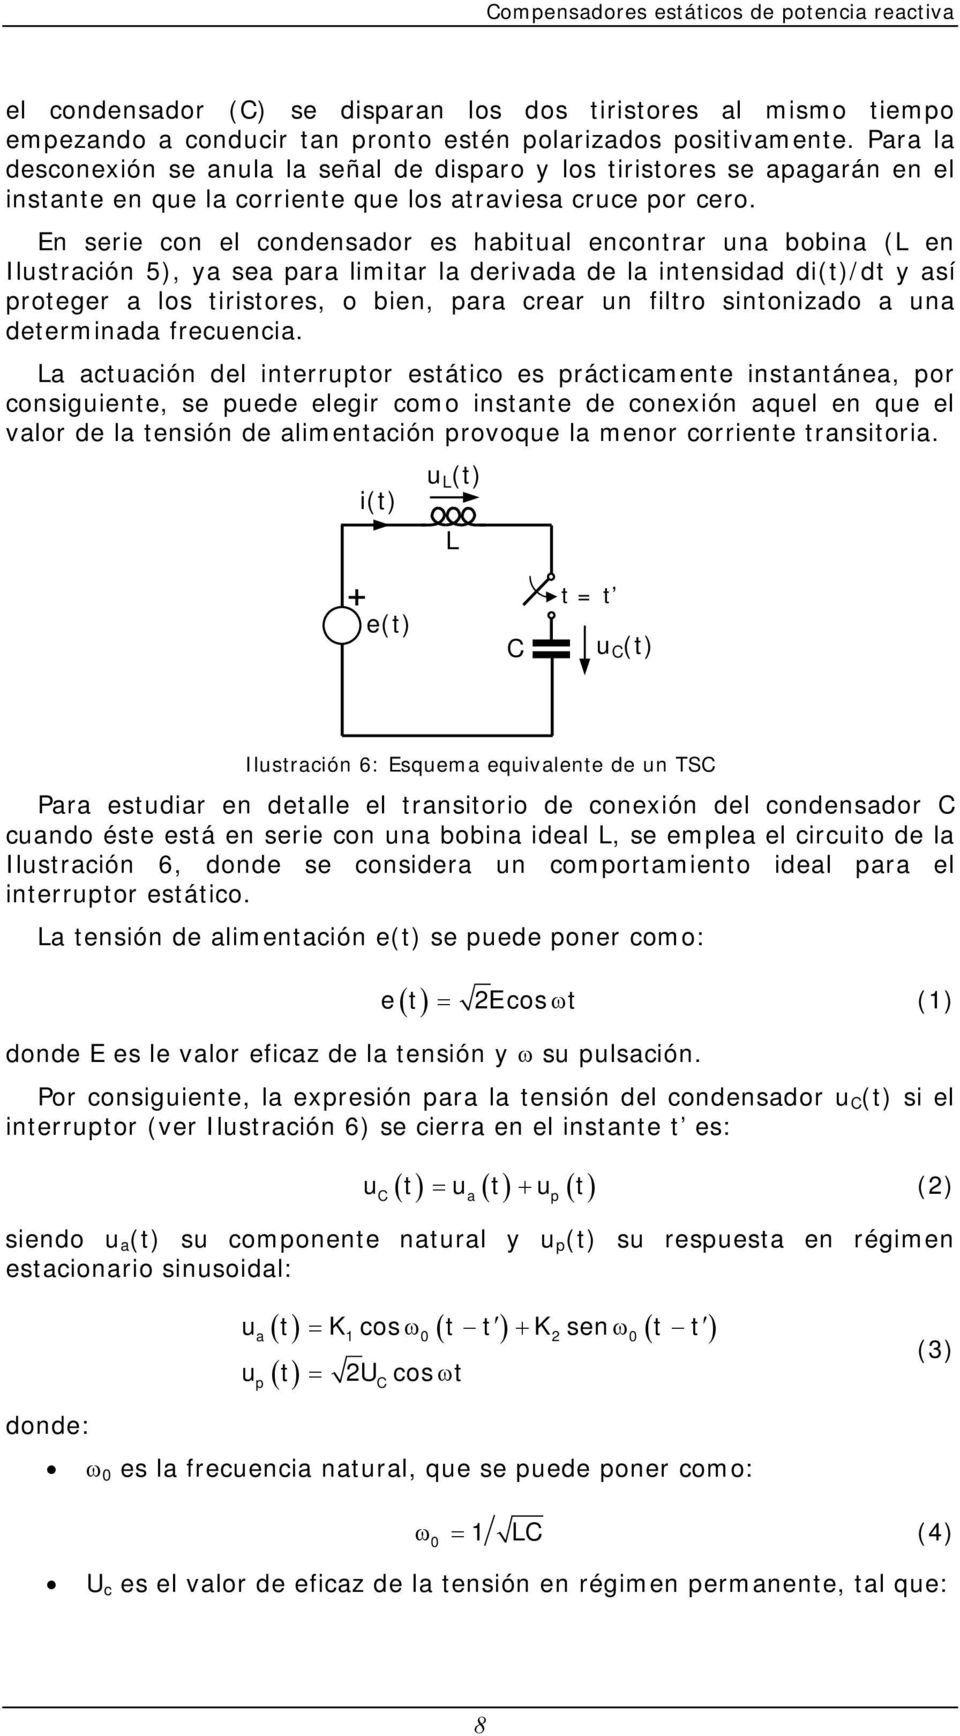 En serie con el condensador es habitual encontrar una bobina (L en Ilustración 5), ya sea para limitar la derivada de la intensidad di(t)/dt y así proteger a los tiristores, o bien, para crear un